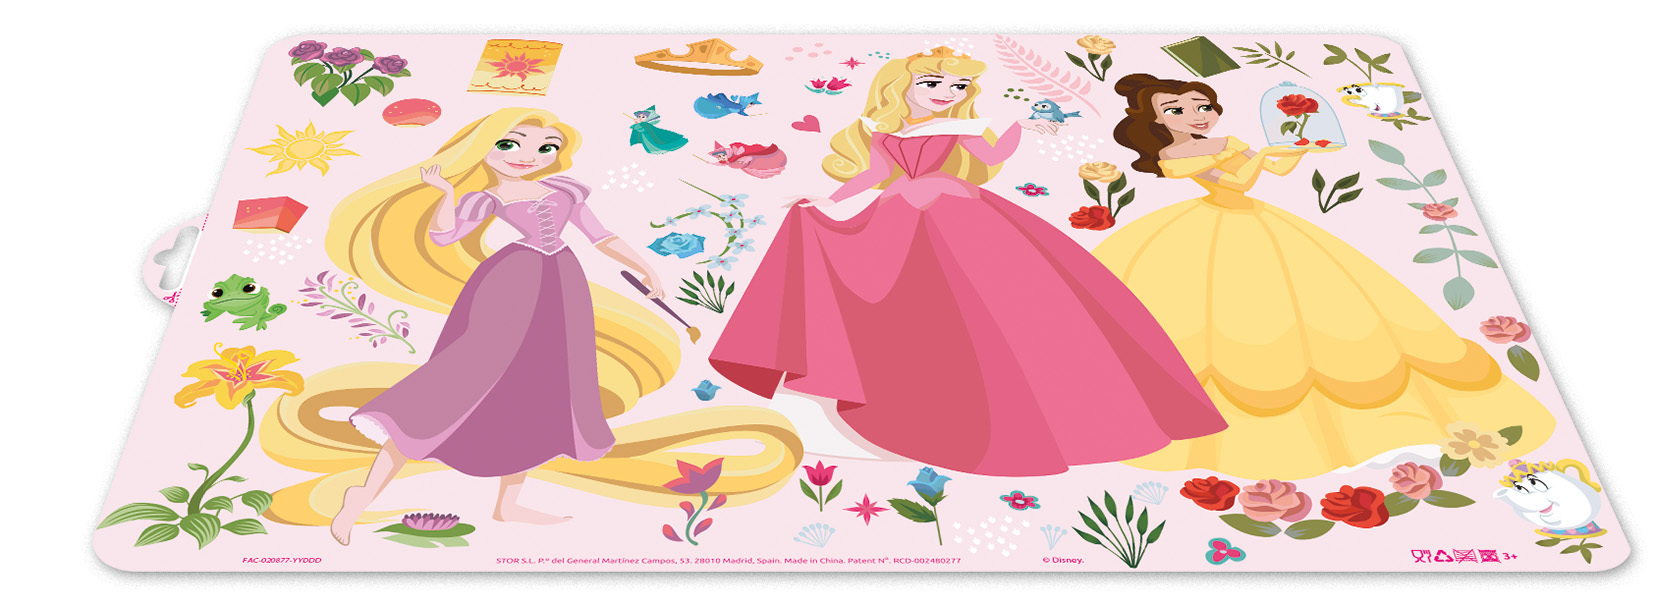 Mantel Individual Disney Princesas Sofía; Dimensiones 43x29 cms; Producto de plástico; Libre bpa. ALMACENESADAN 0425 